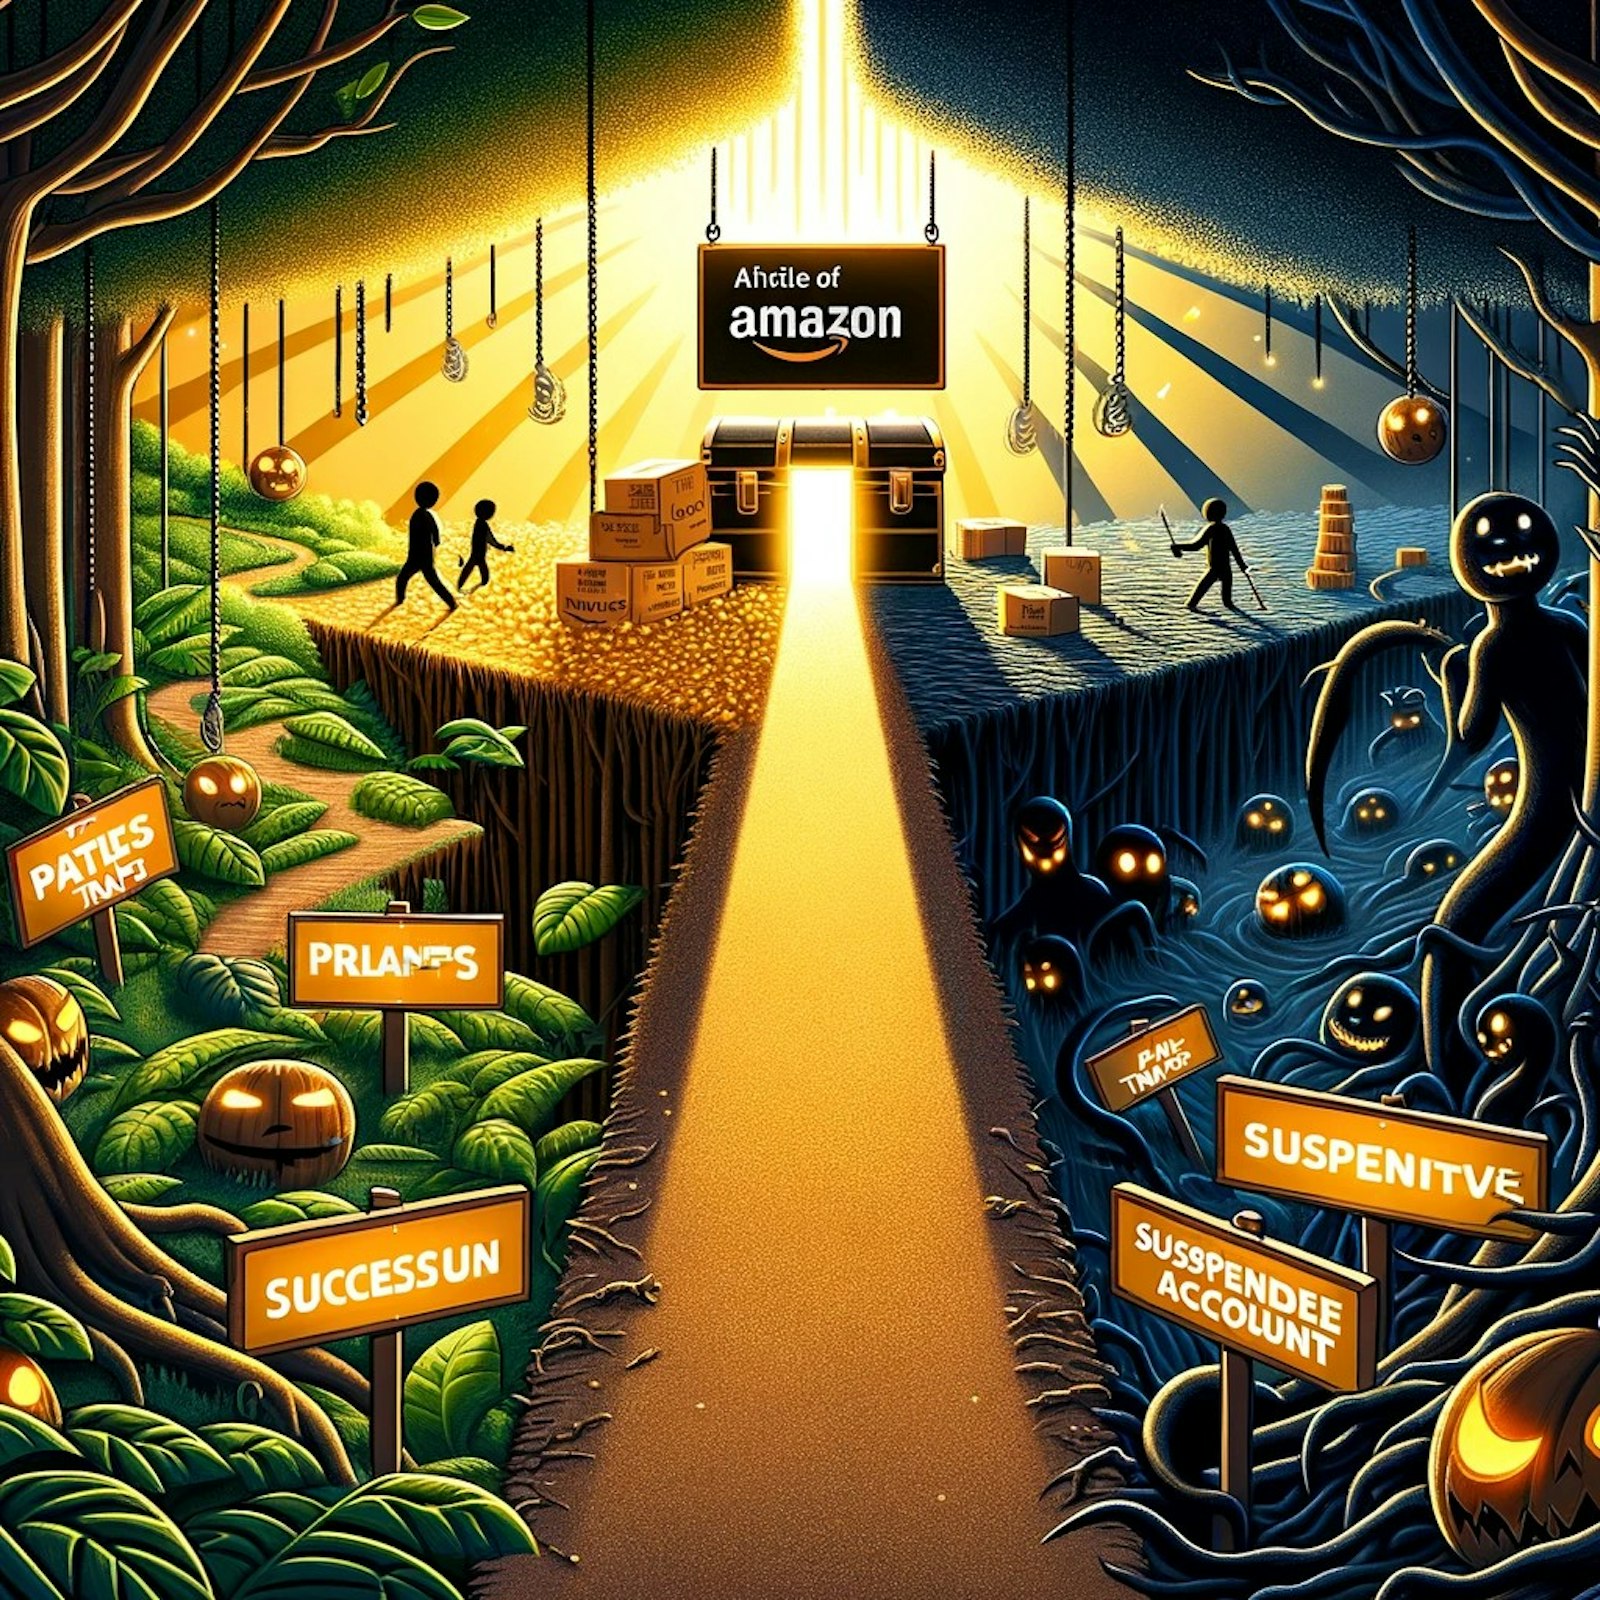 mage représentant les défis du commerce sur Amazon FBA, avec des symboles de risques et de protection de compte.